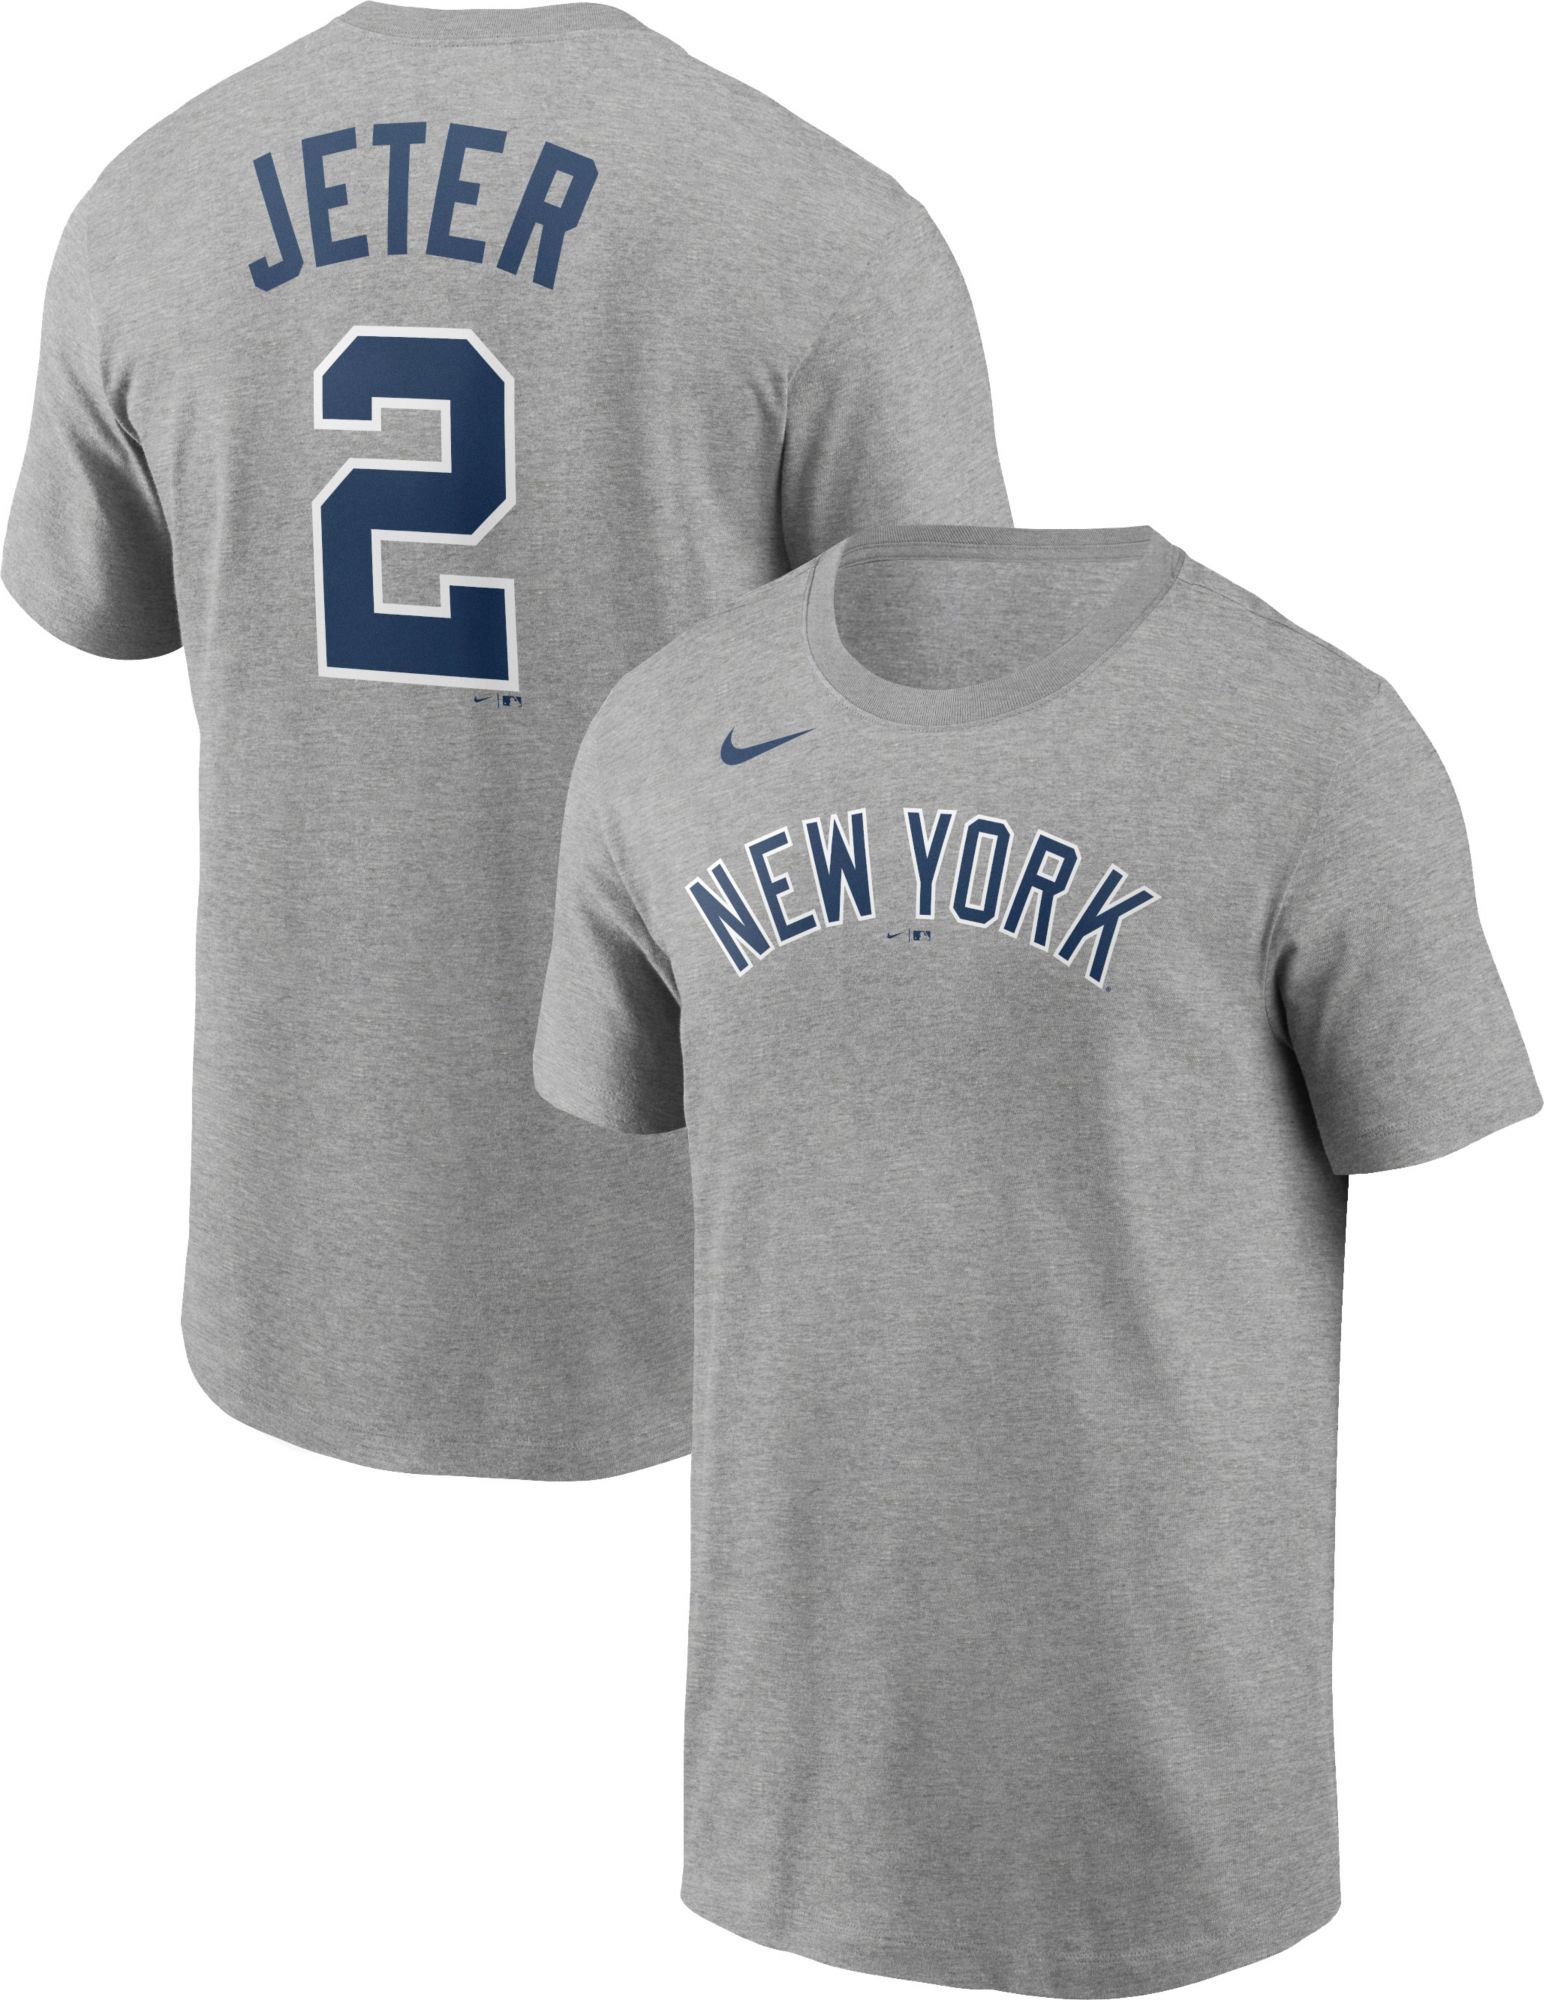 New York Yankees Aaron Judge 99 Derek Jeter 2 T-Shirt - Anynee